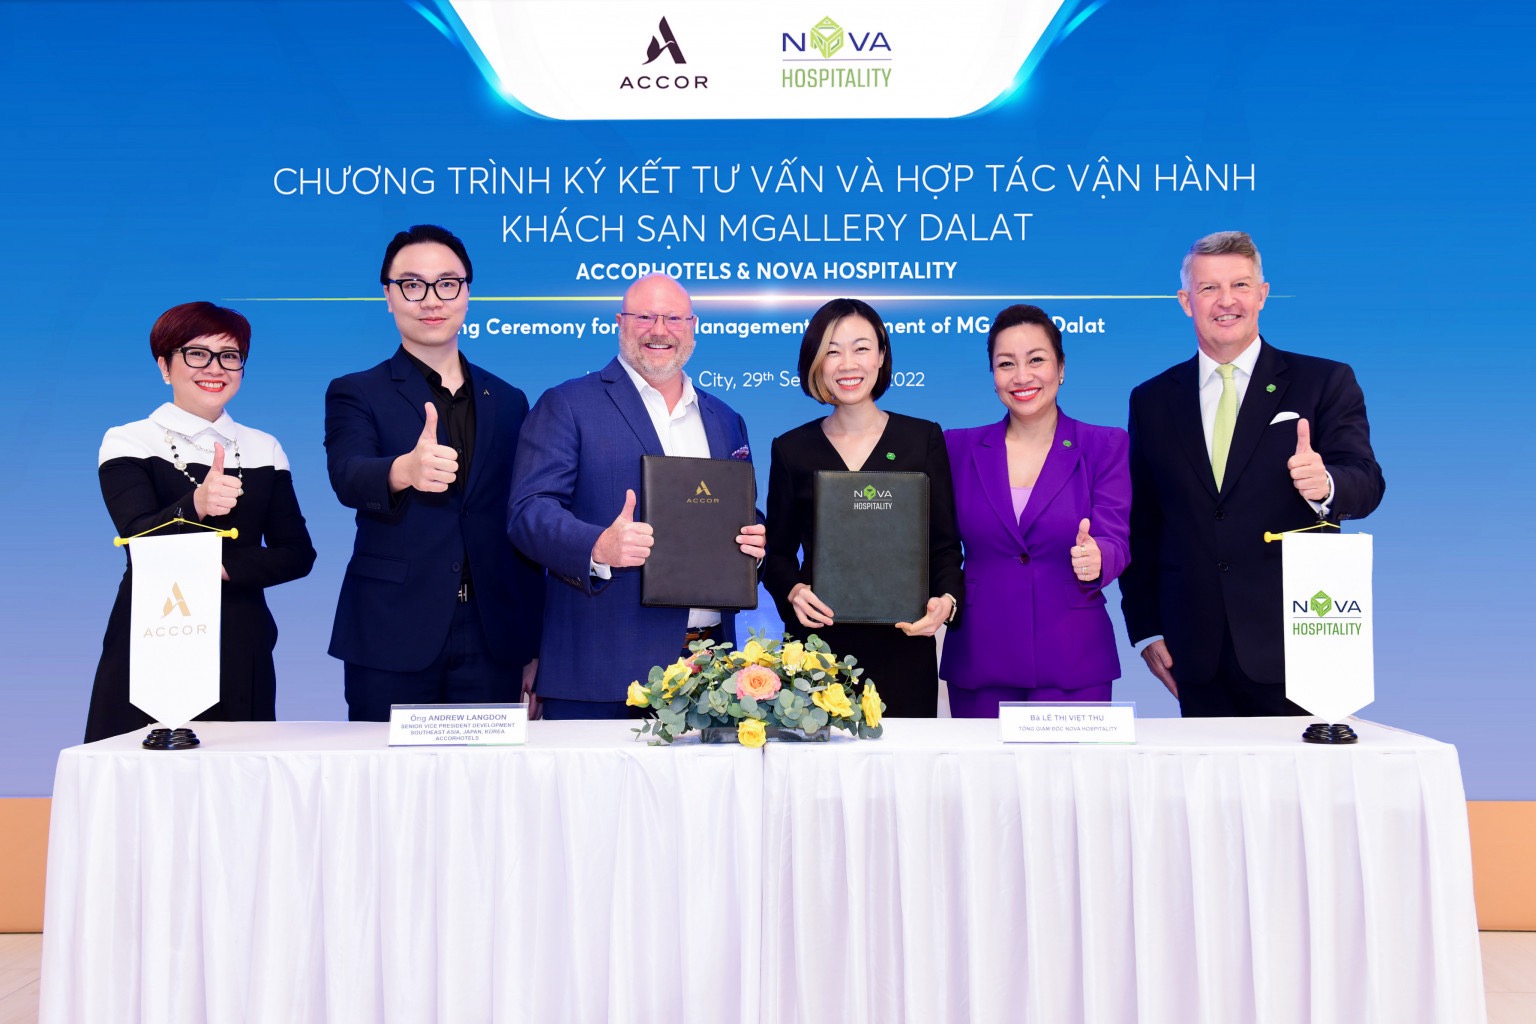 Accor sẽ trở thành đơn vị tư vấn vận hành khách sạn MGallery Dalat, một sản phẩm nghỉ dưỡng mới của Nova Hospitality tại Đà Lạt.